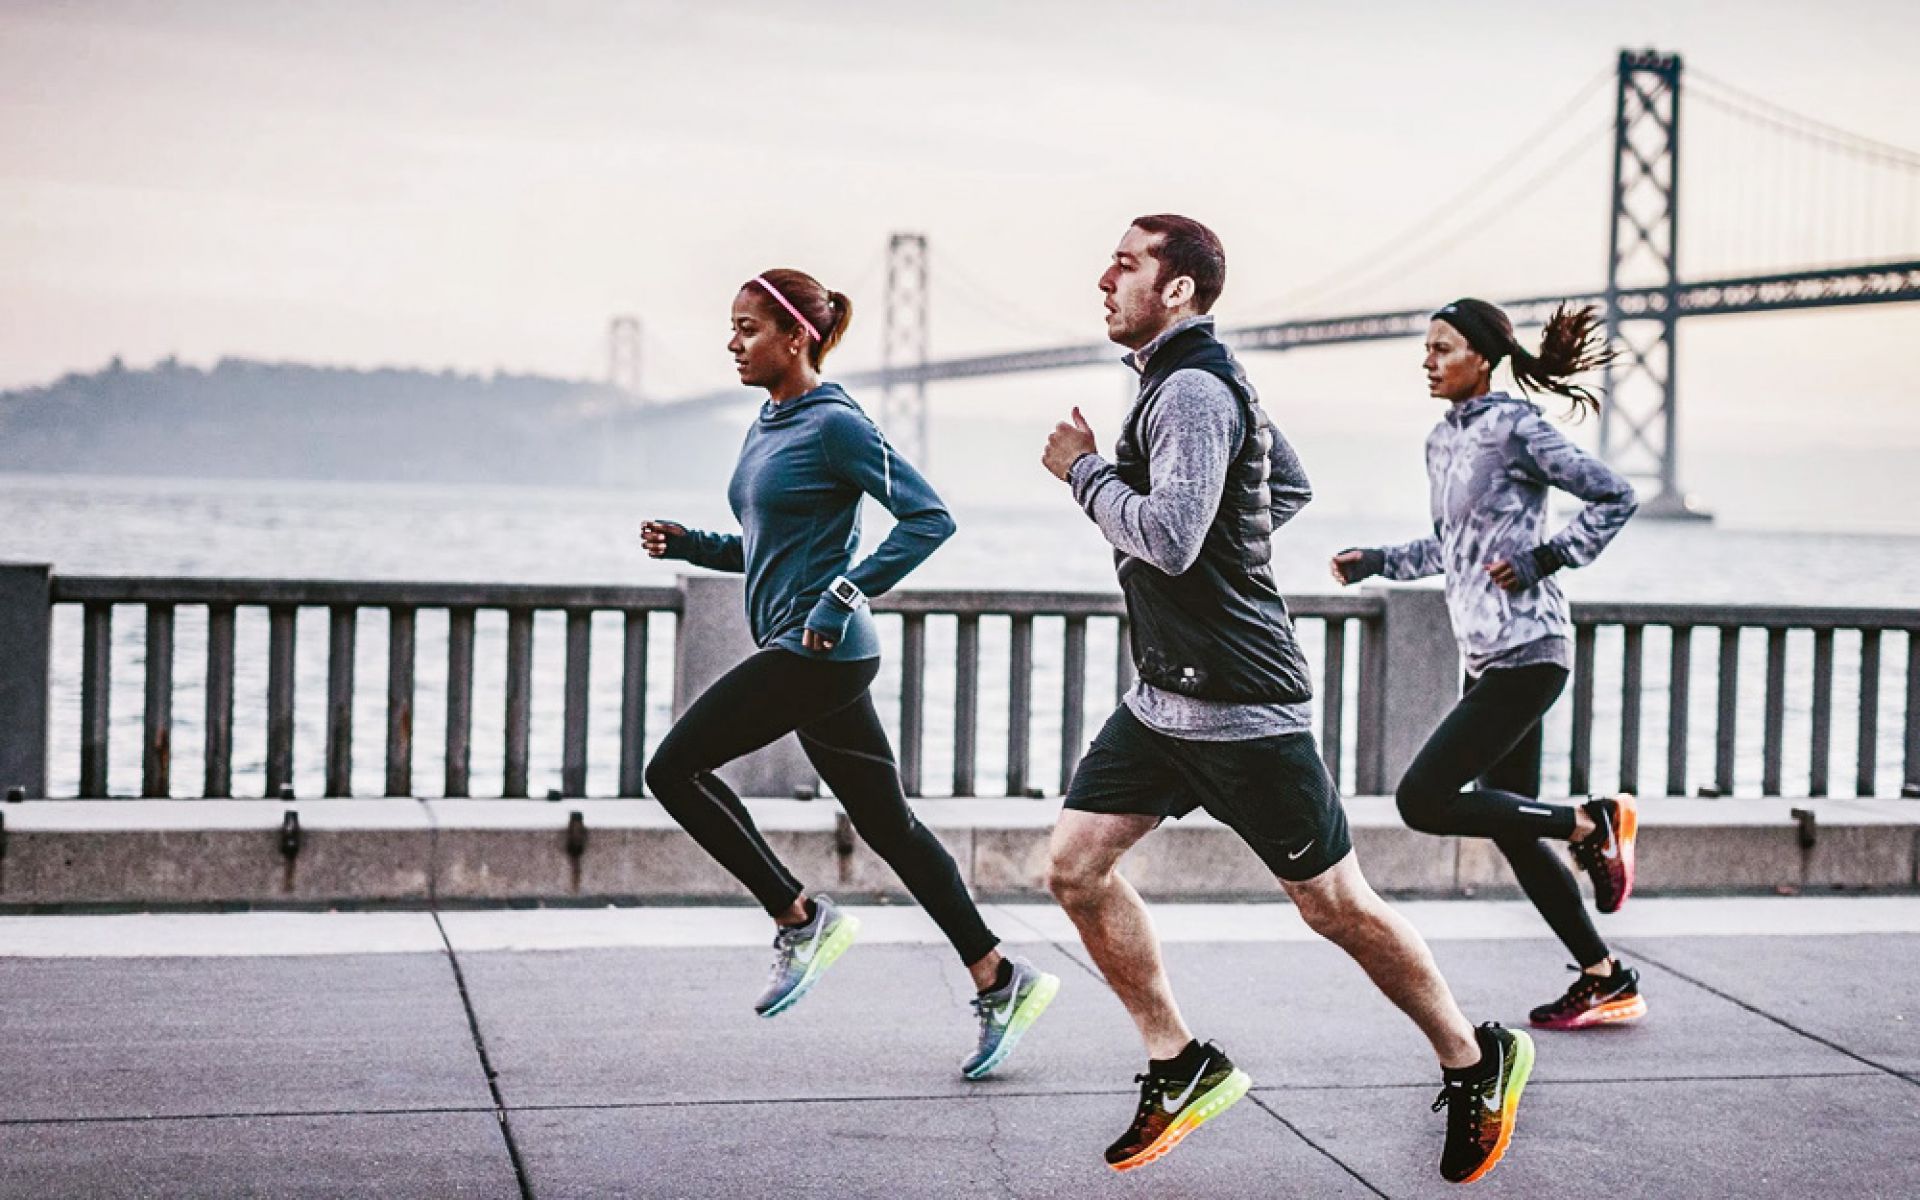 Найк работают. Nike Running. Nike Running бег. Занятие спортом. Фотосессия в спортивном стиле.